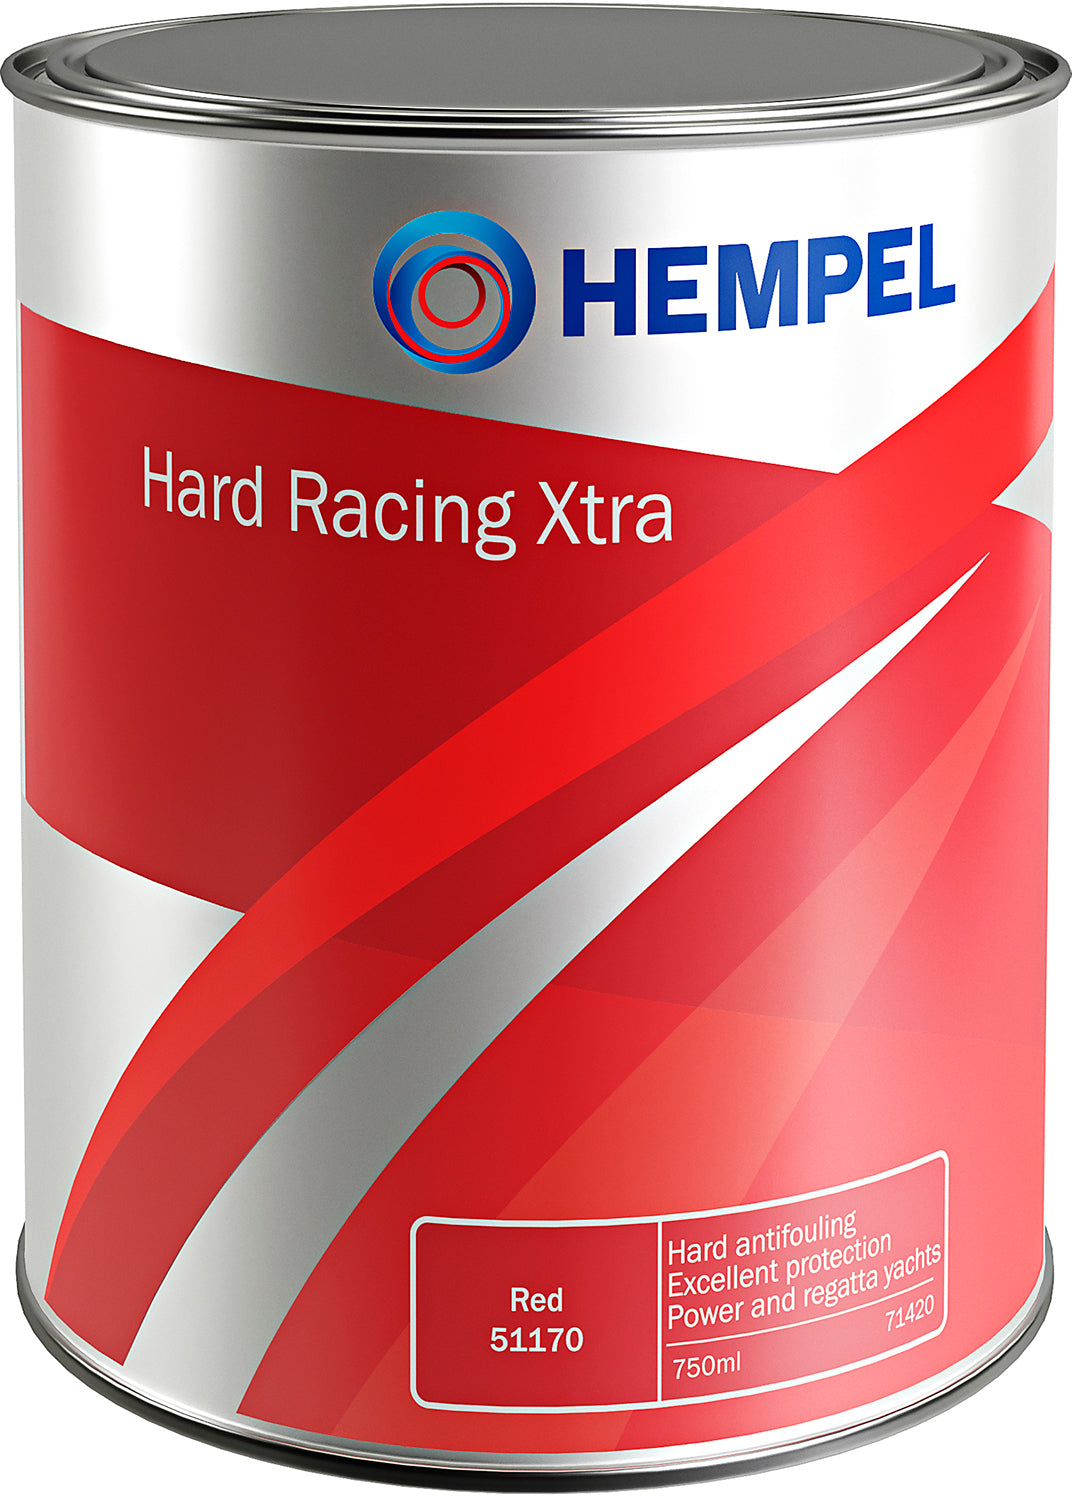 Hard Racing XTRA mørkblå 30390 750ml